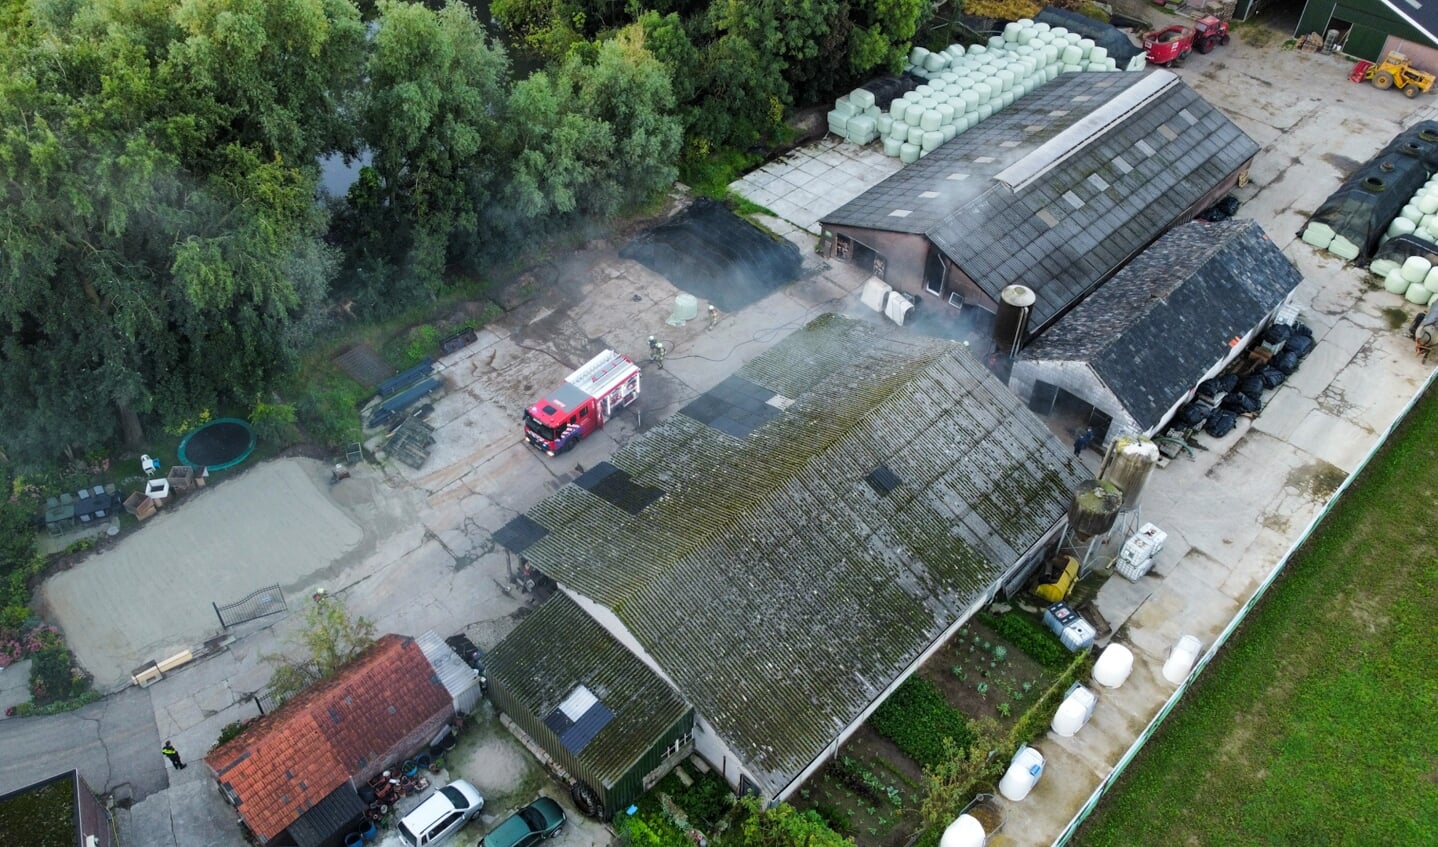 Flinke rookontwikkeling bij brand in schuur Oijen. (Foto: Gabor Heeres, Foto Mallo)